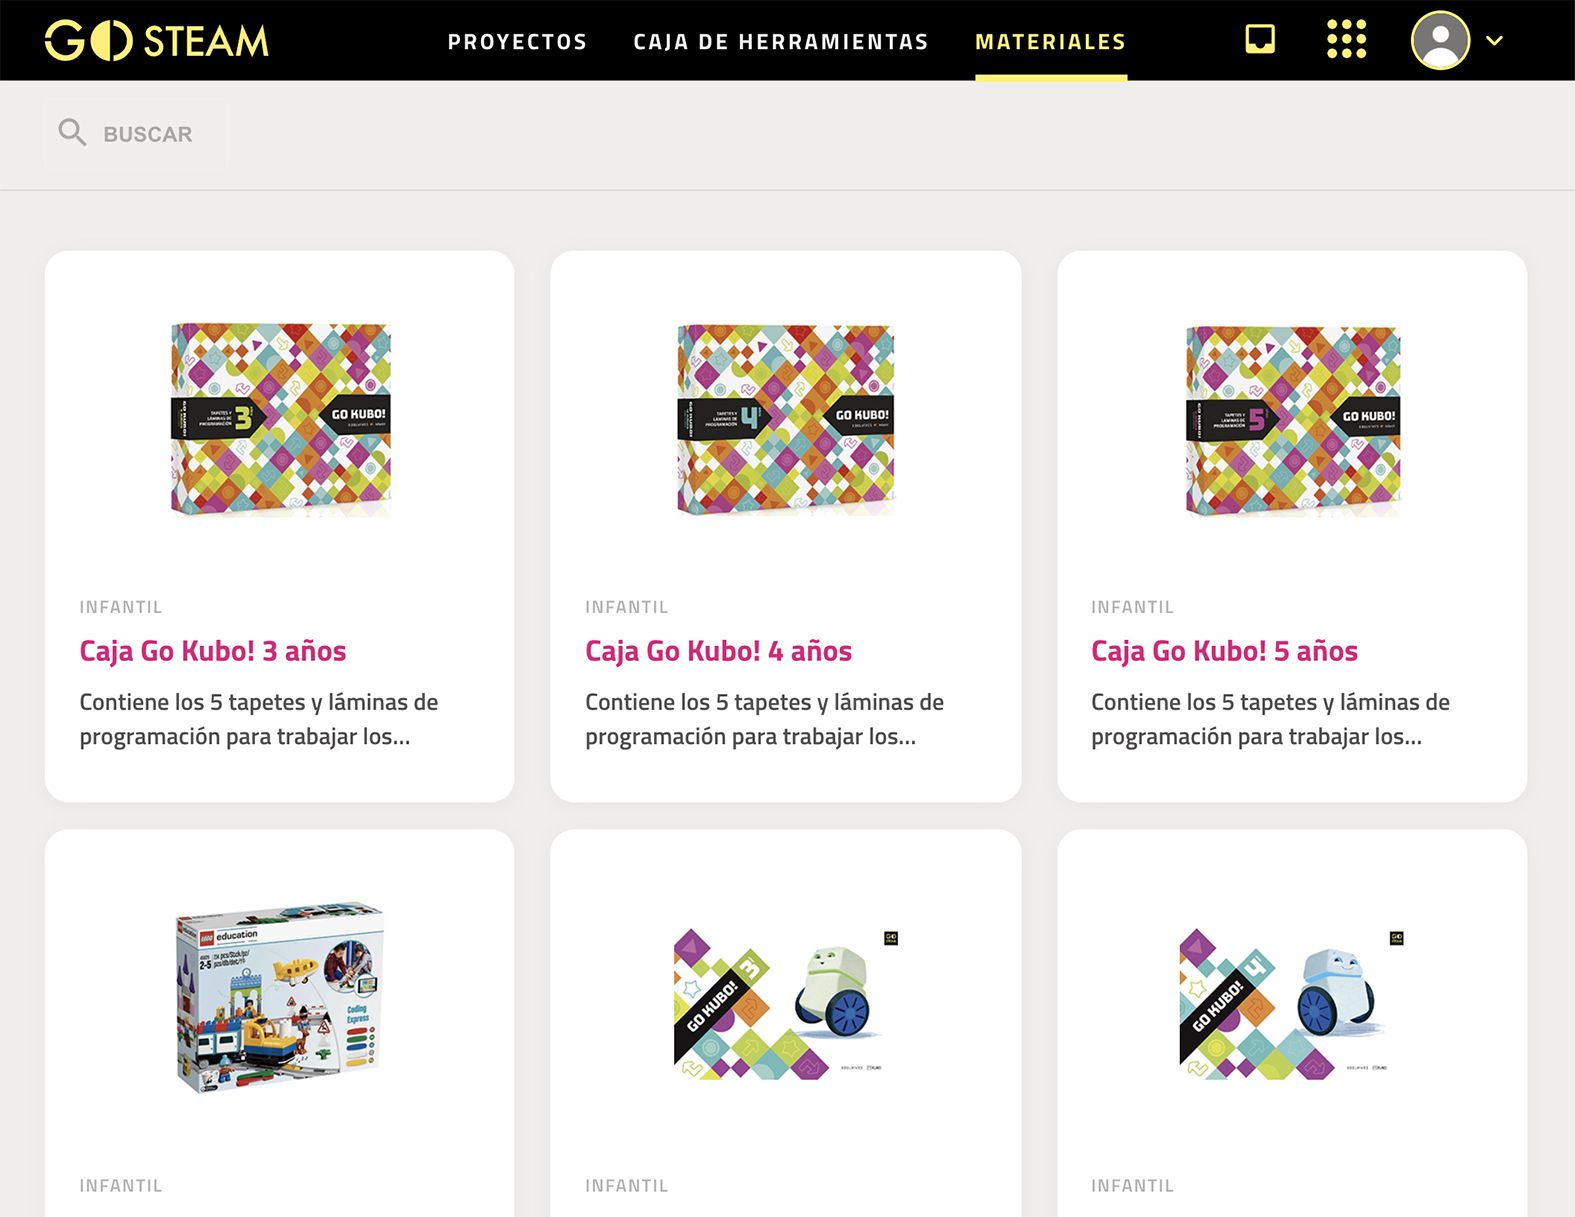 La plataforma Go STEAM ofrece materiales, recursos y herramientas desde Infantil hasta Secundaria.